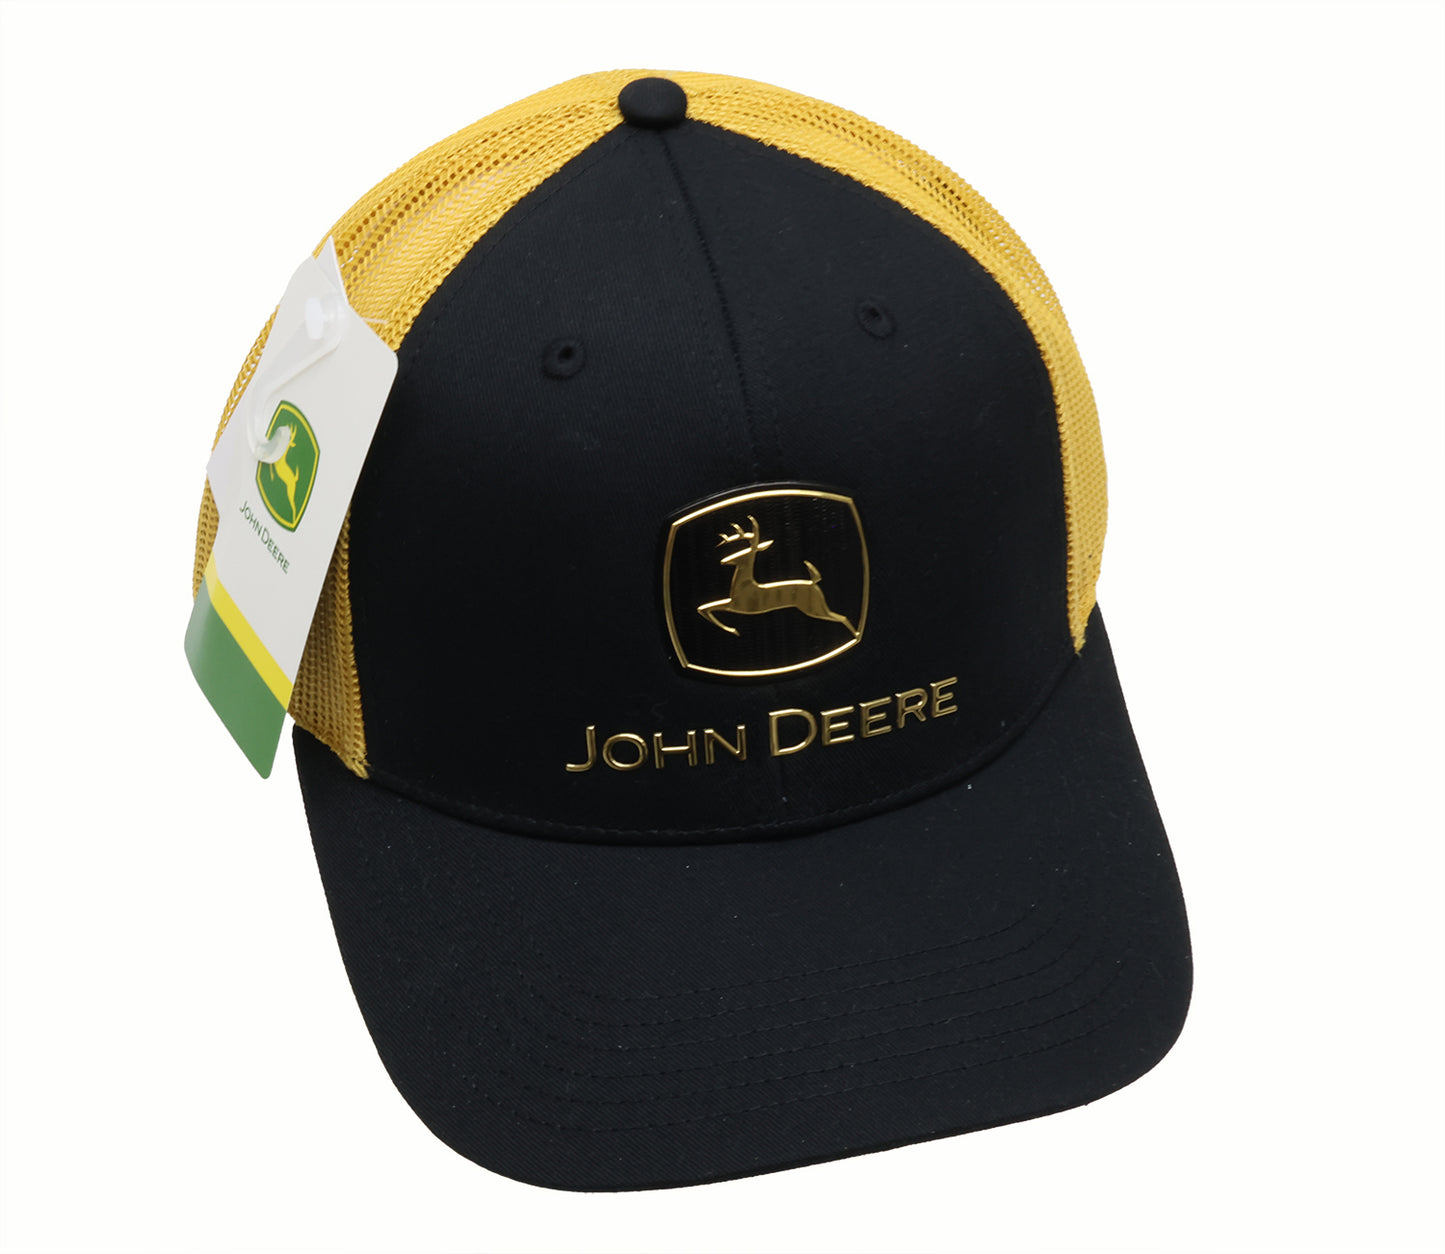 John Deere Mens Black/Gold Applique Cap/Hat - LP86092